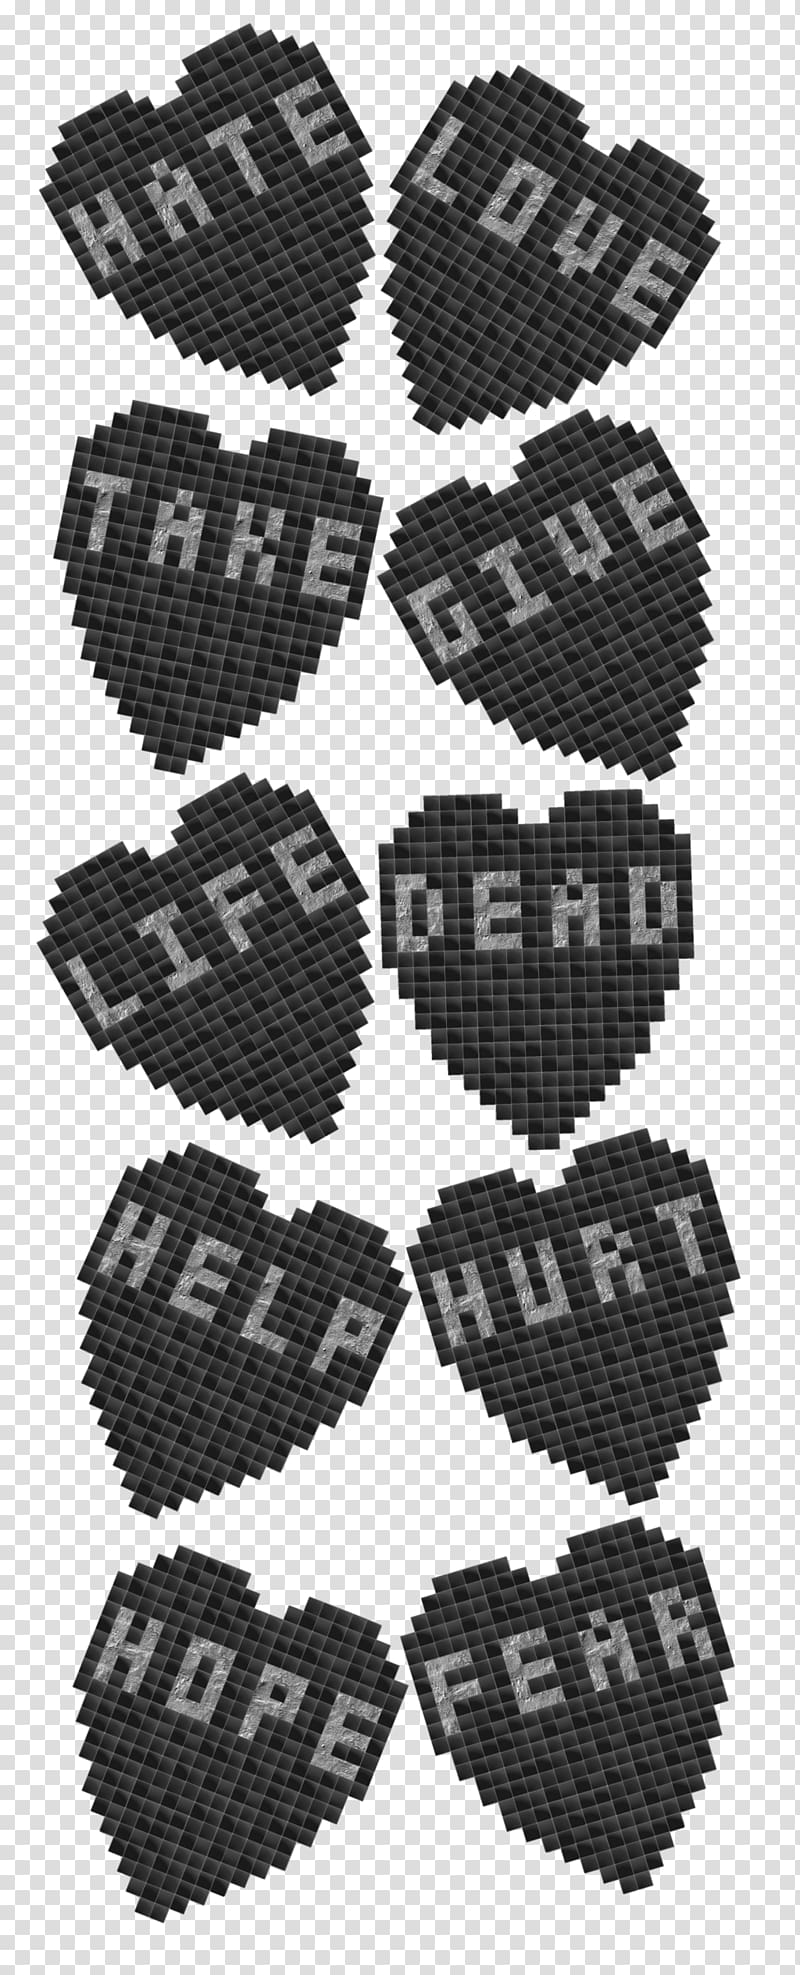 Product Font Pokémon Black M, 26 letters wordart transparent background PNG clipart